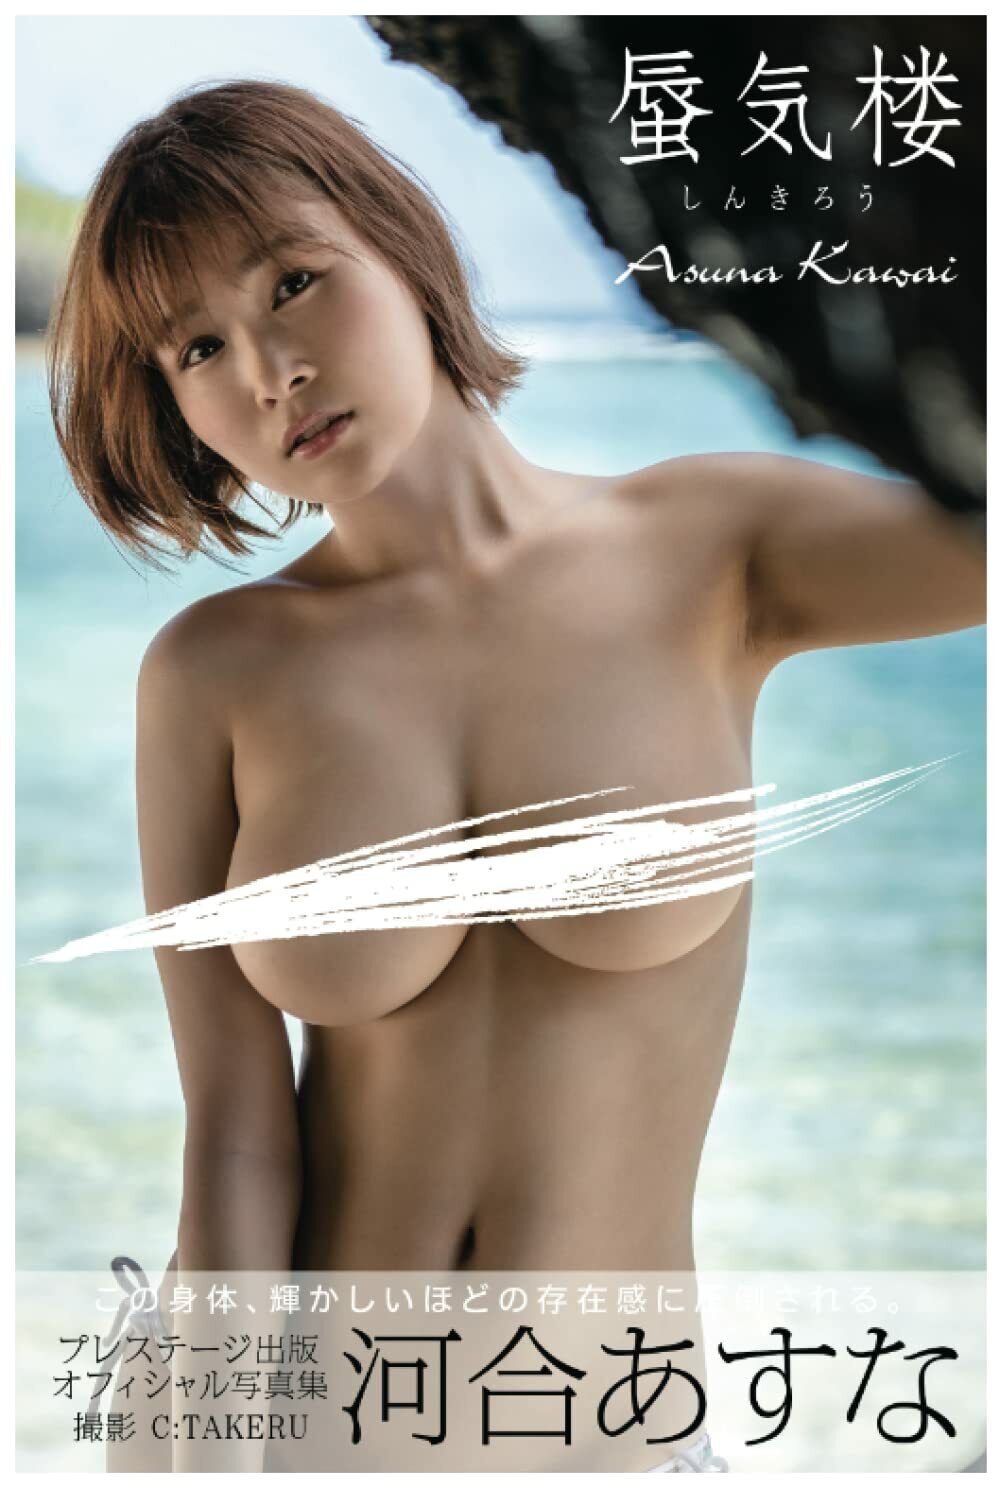 Asuna kawai